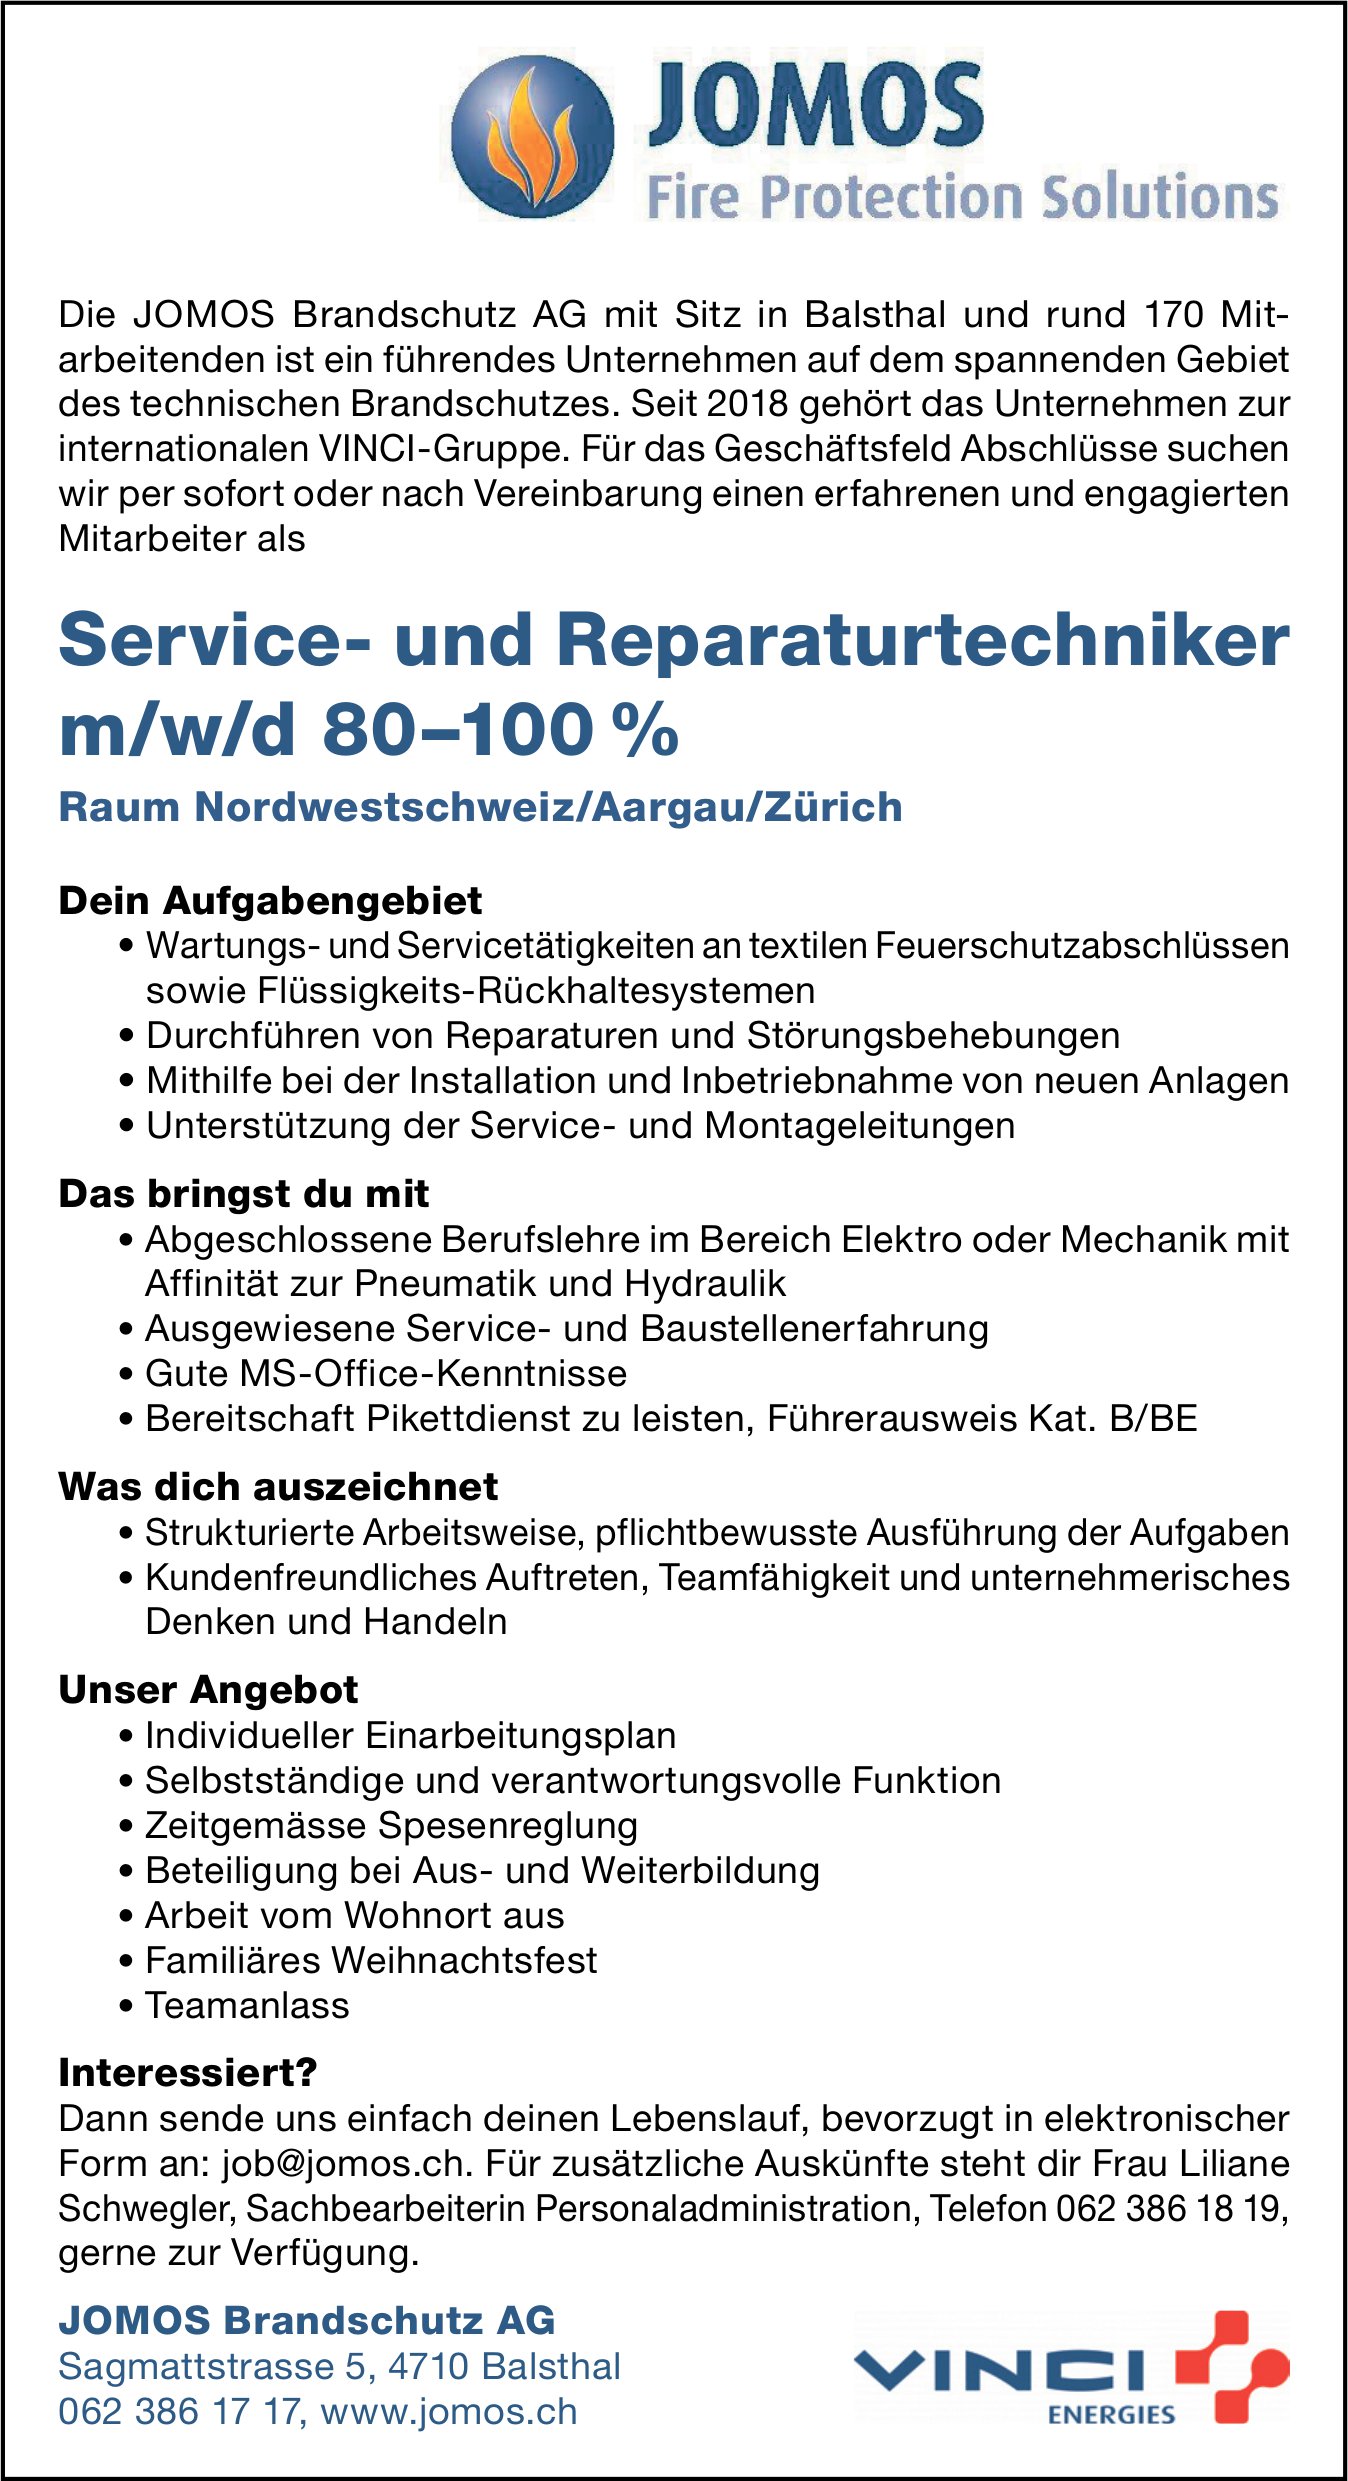 Service- und Reparaturtechniker m/w/d 80–100 %, JOMOS Brandschutz AG, Balsthal, gesucht